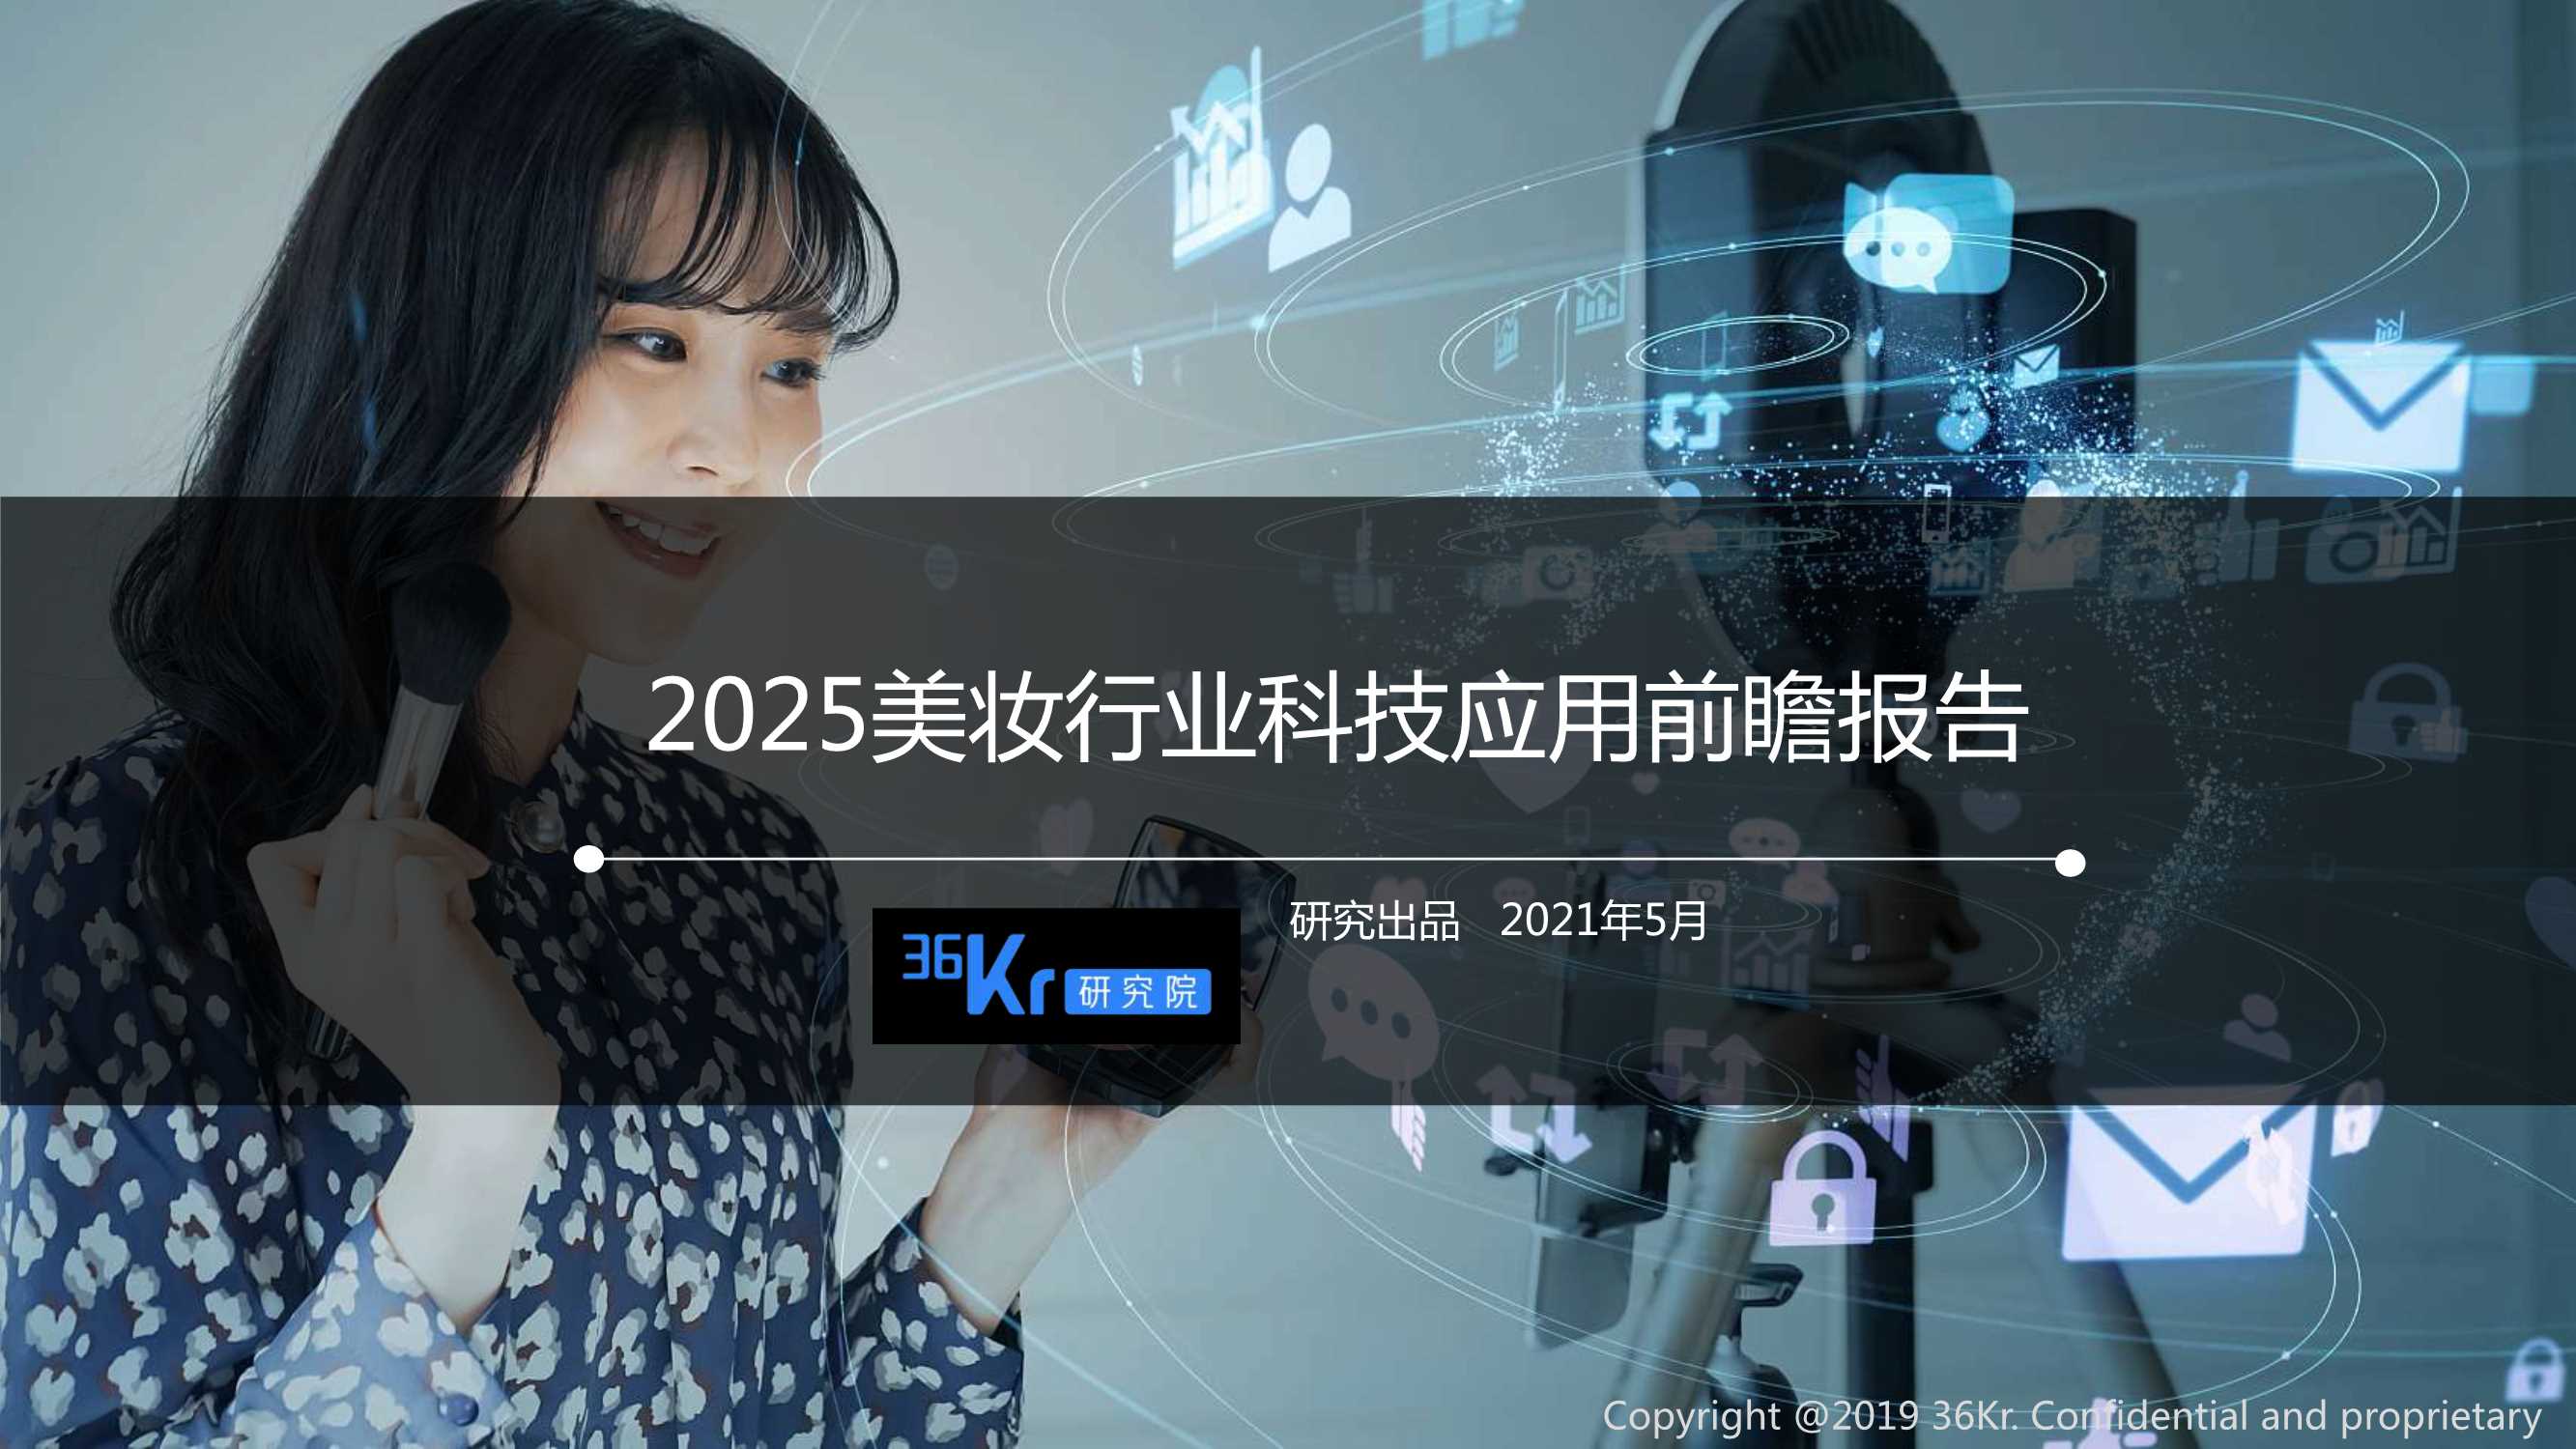 36Kr-2025美妆行业科技应用前瞻报告-2021.05-27页